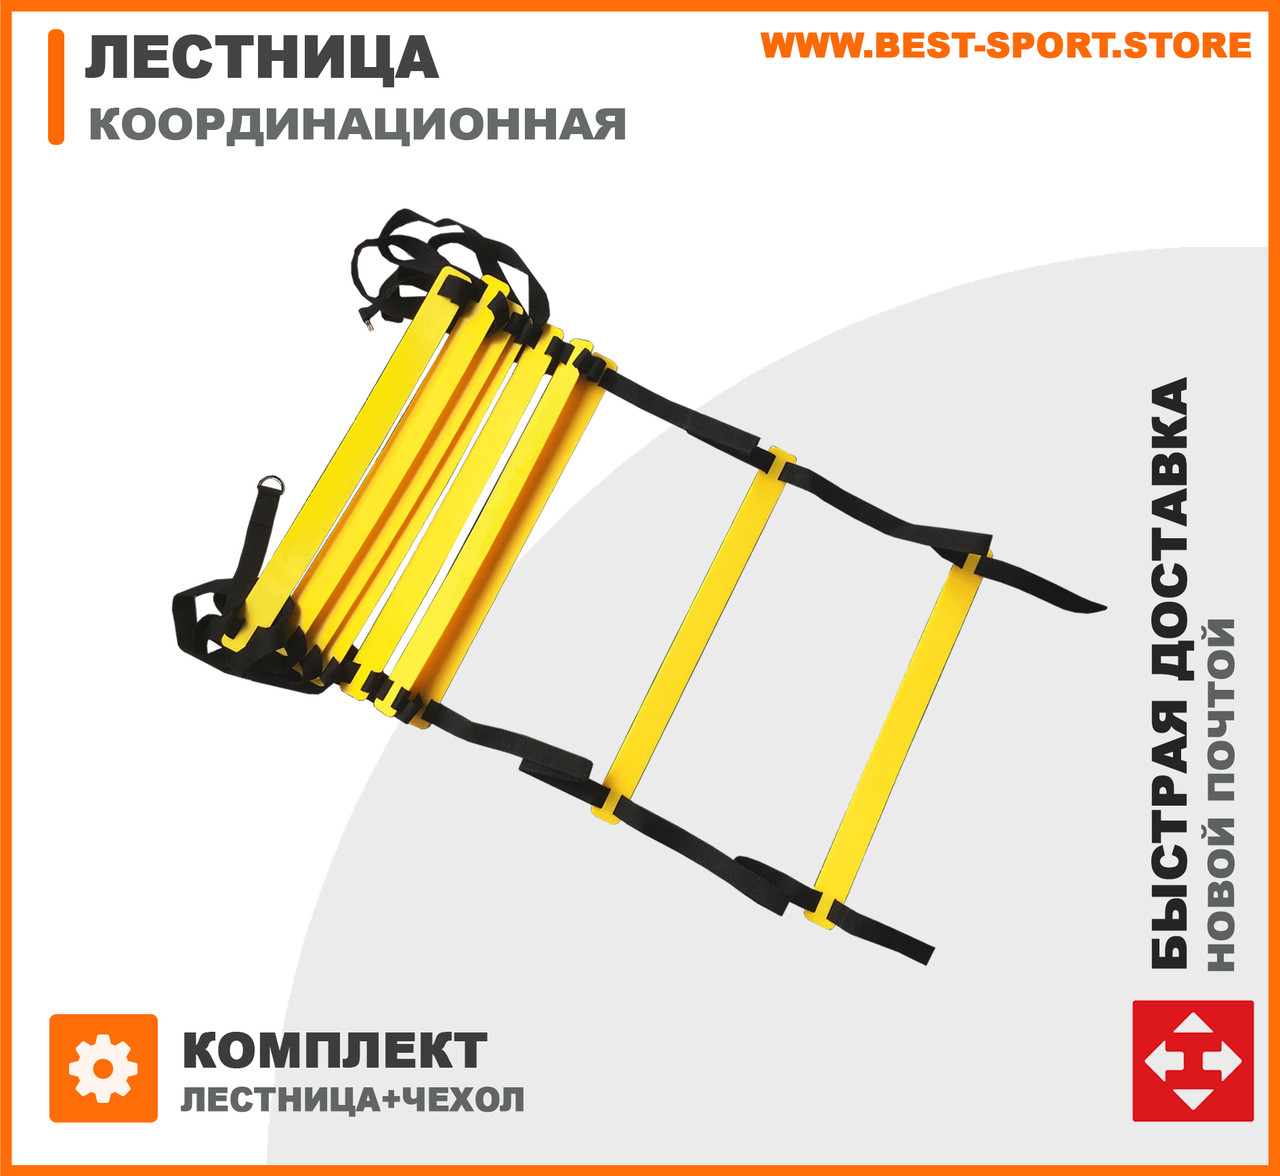 Координаційна драбина, швидкісна доріжка (speed ladder, agility ladder)